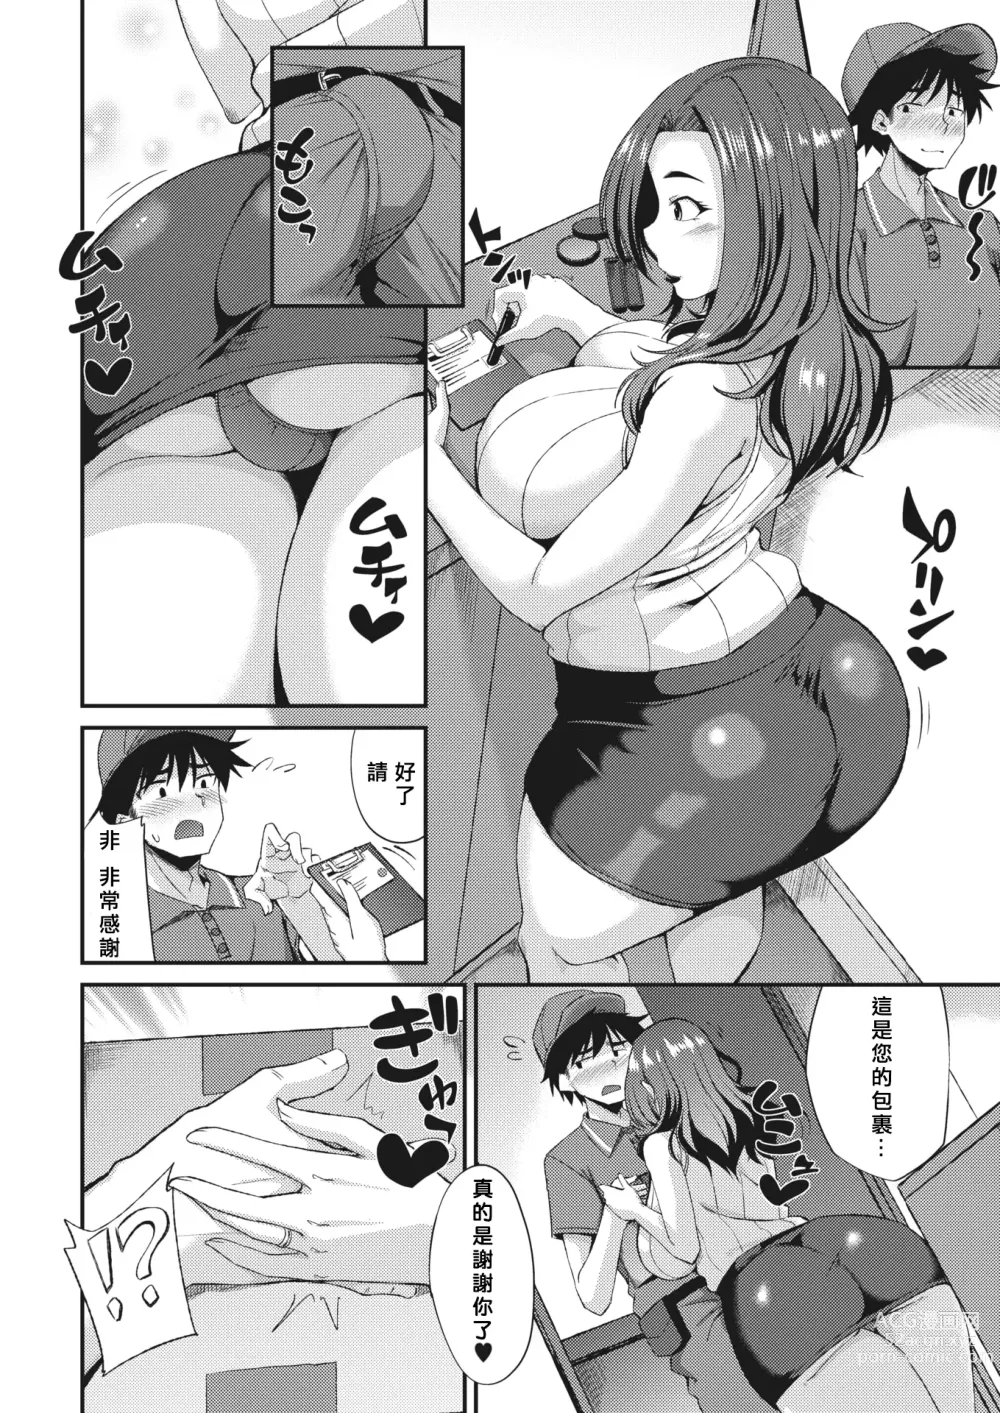 Page 2 of manga Oku-sama Senyou Takuhaibin